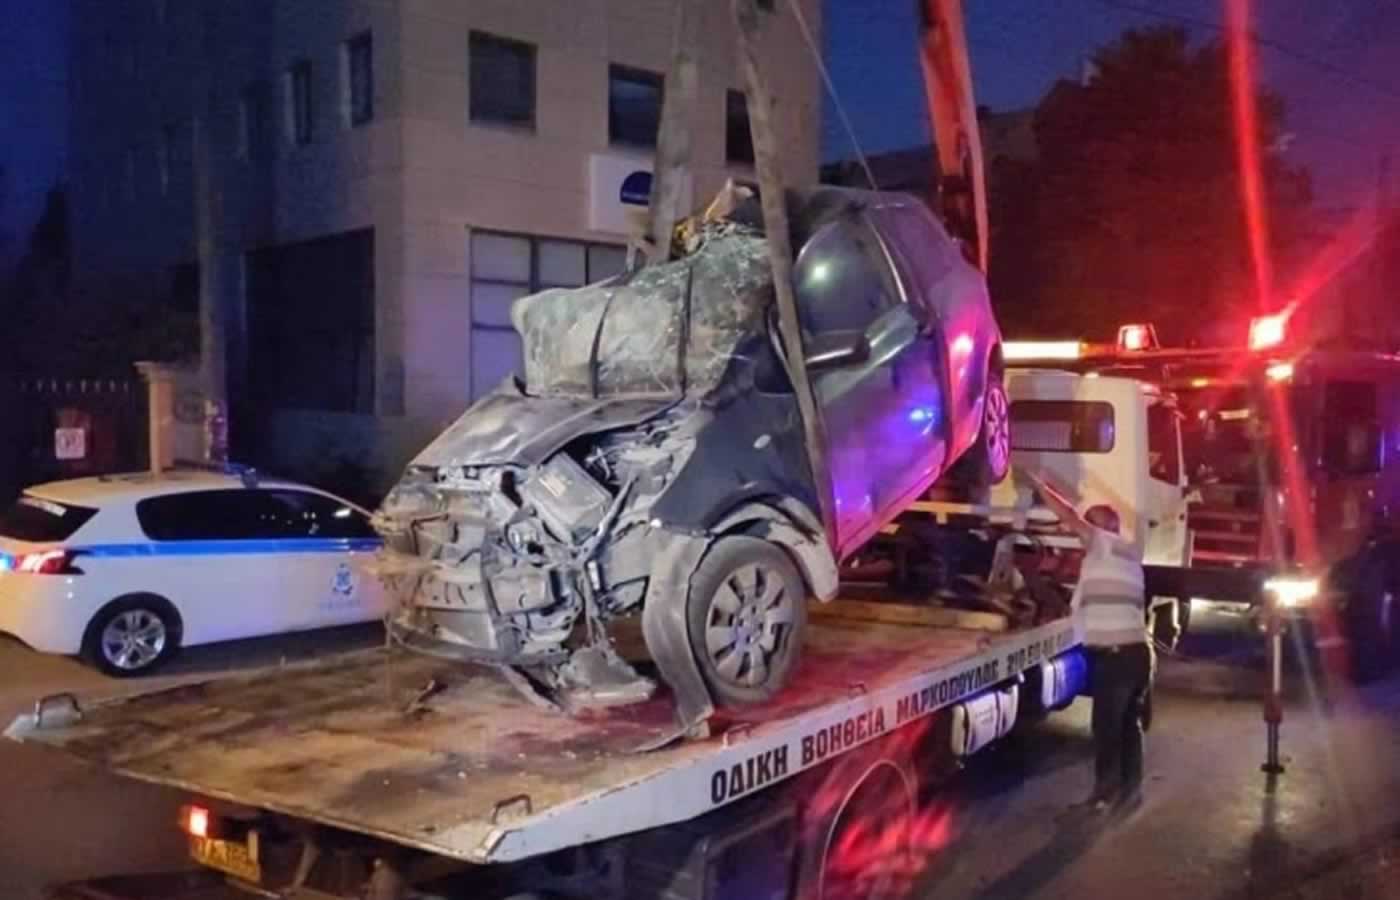 Ένα απίστευτο τροχαίο δυστύχημα συνέβει τα ξημερώματα στο Χαλάνδρι όταν λίγο μετά τις τέσσερις ένα αυτοκίνητο που κινούταν επί της οδού